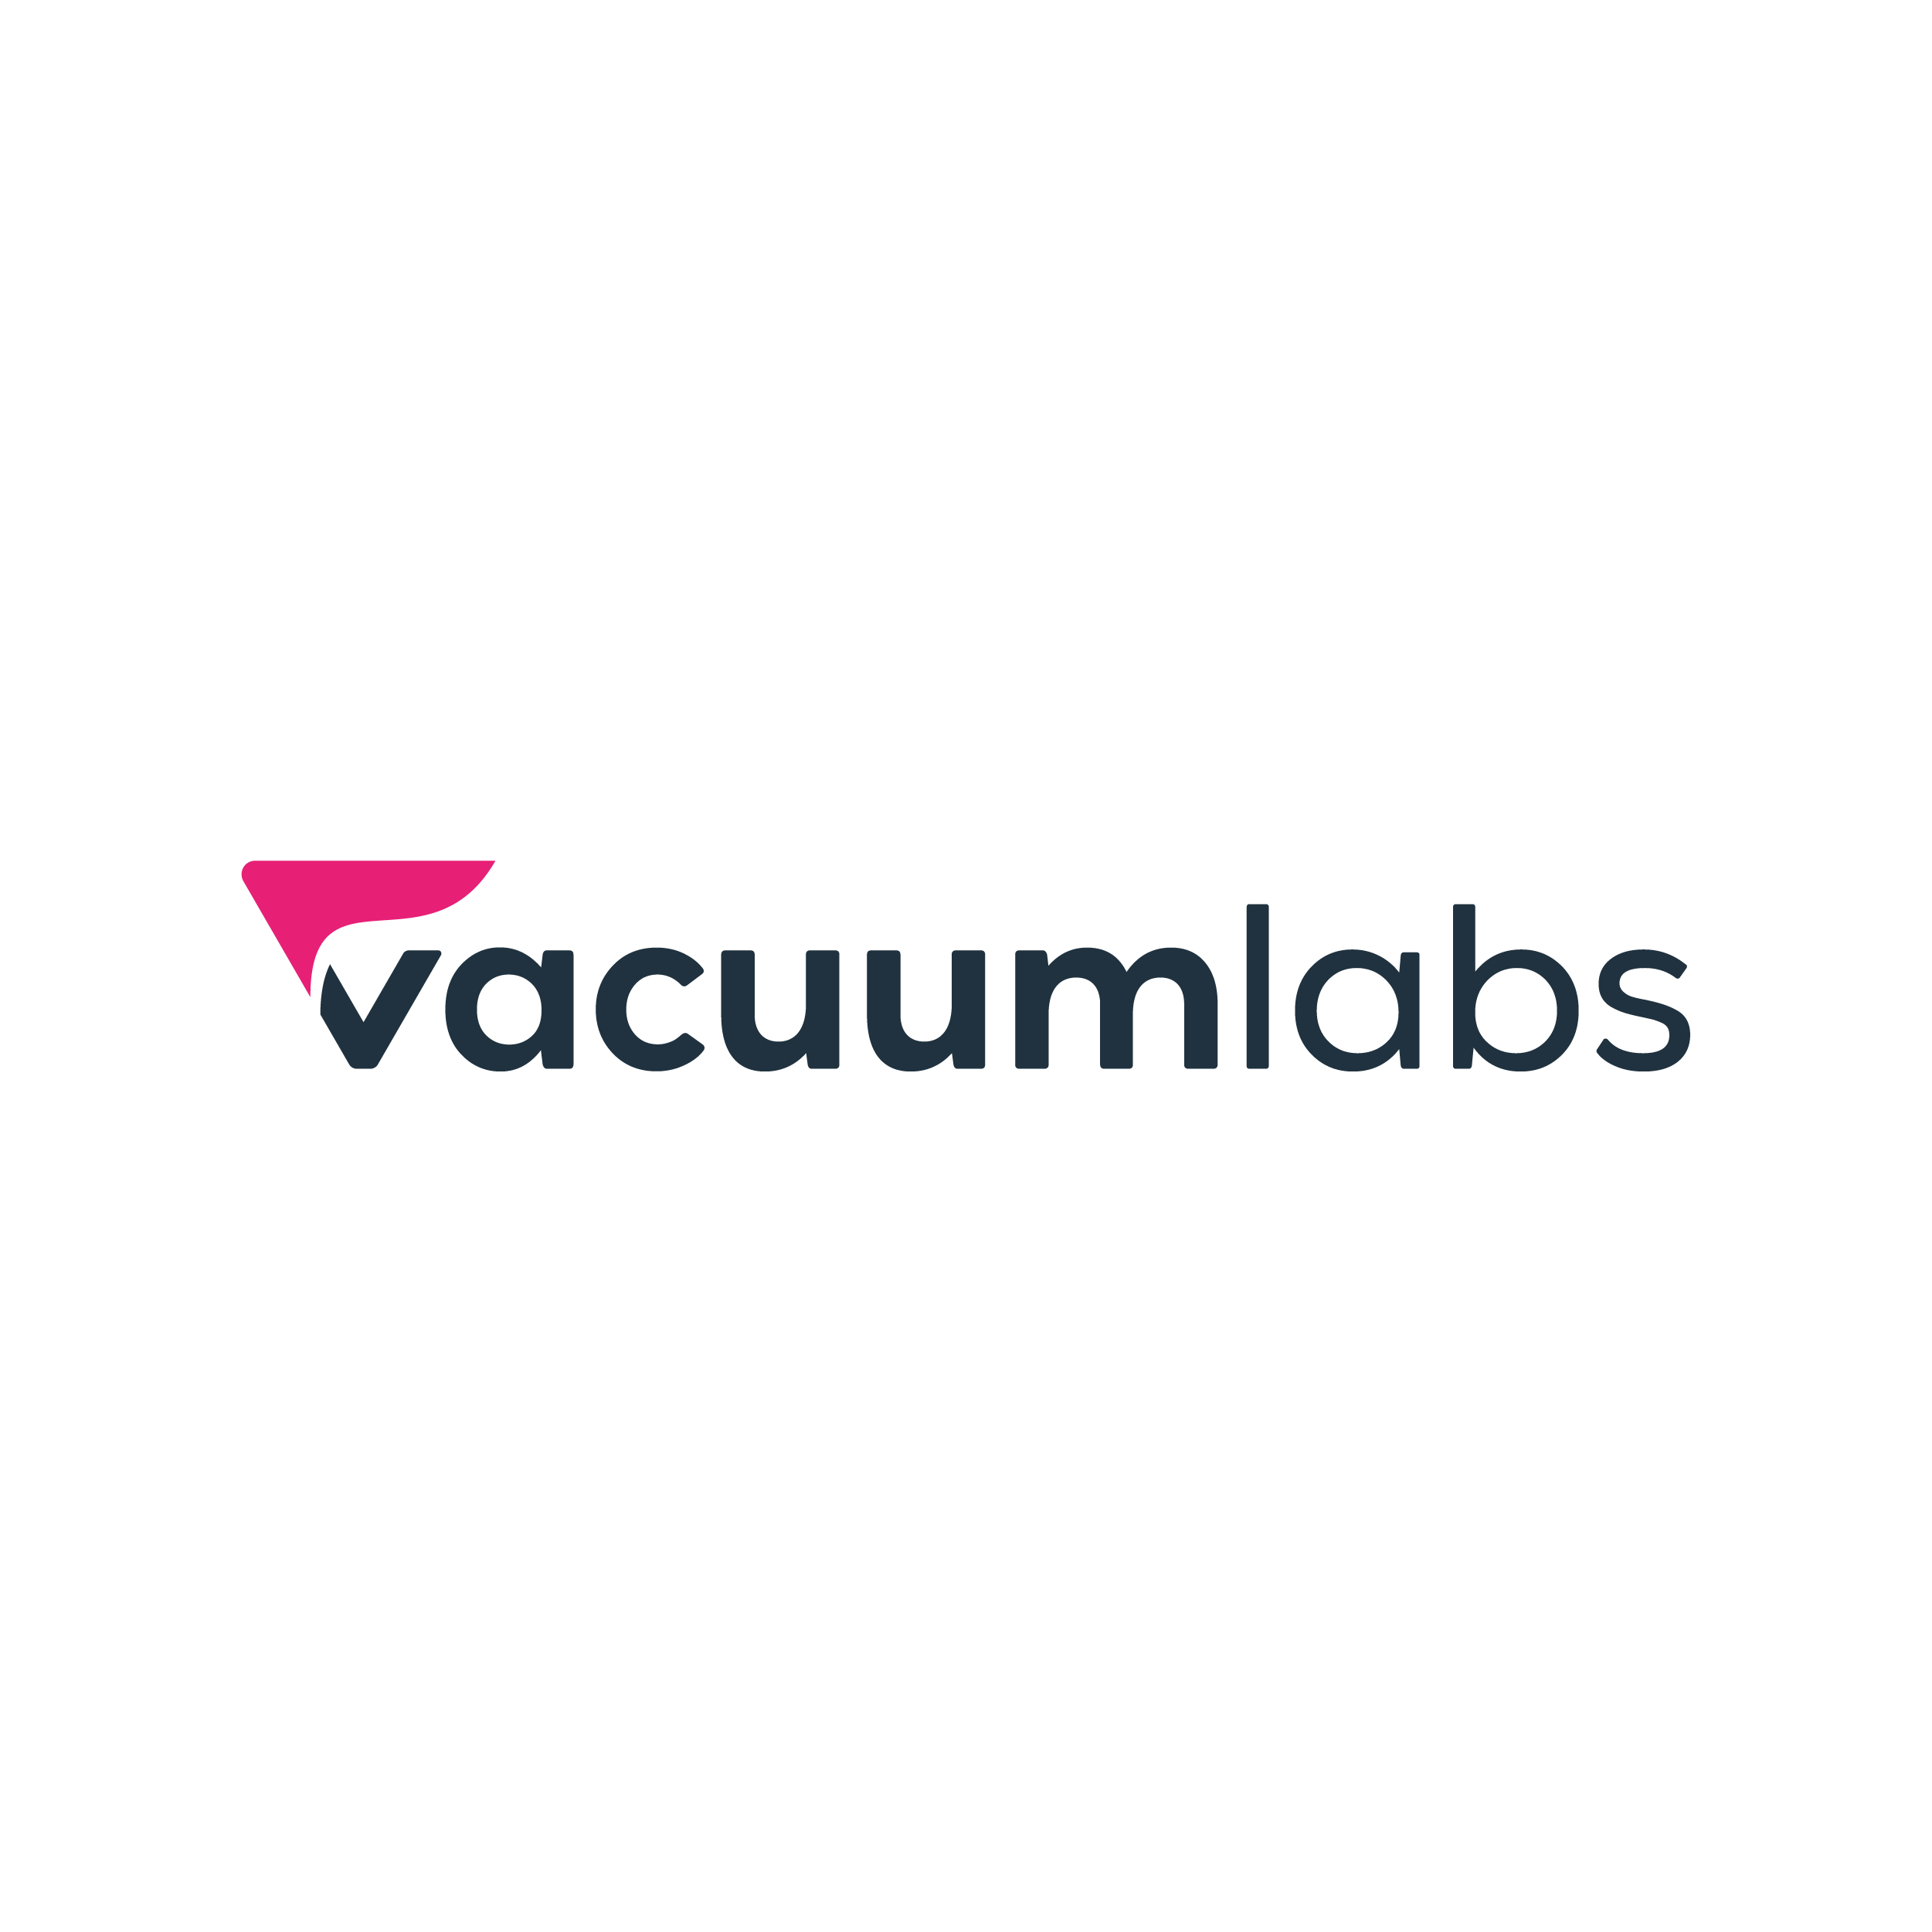 Vacuumlabs logo